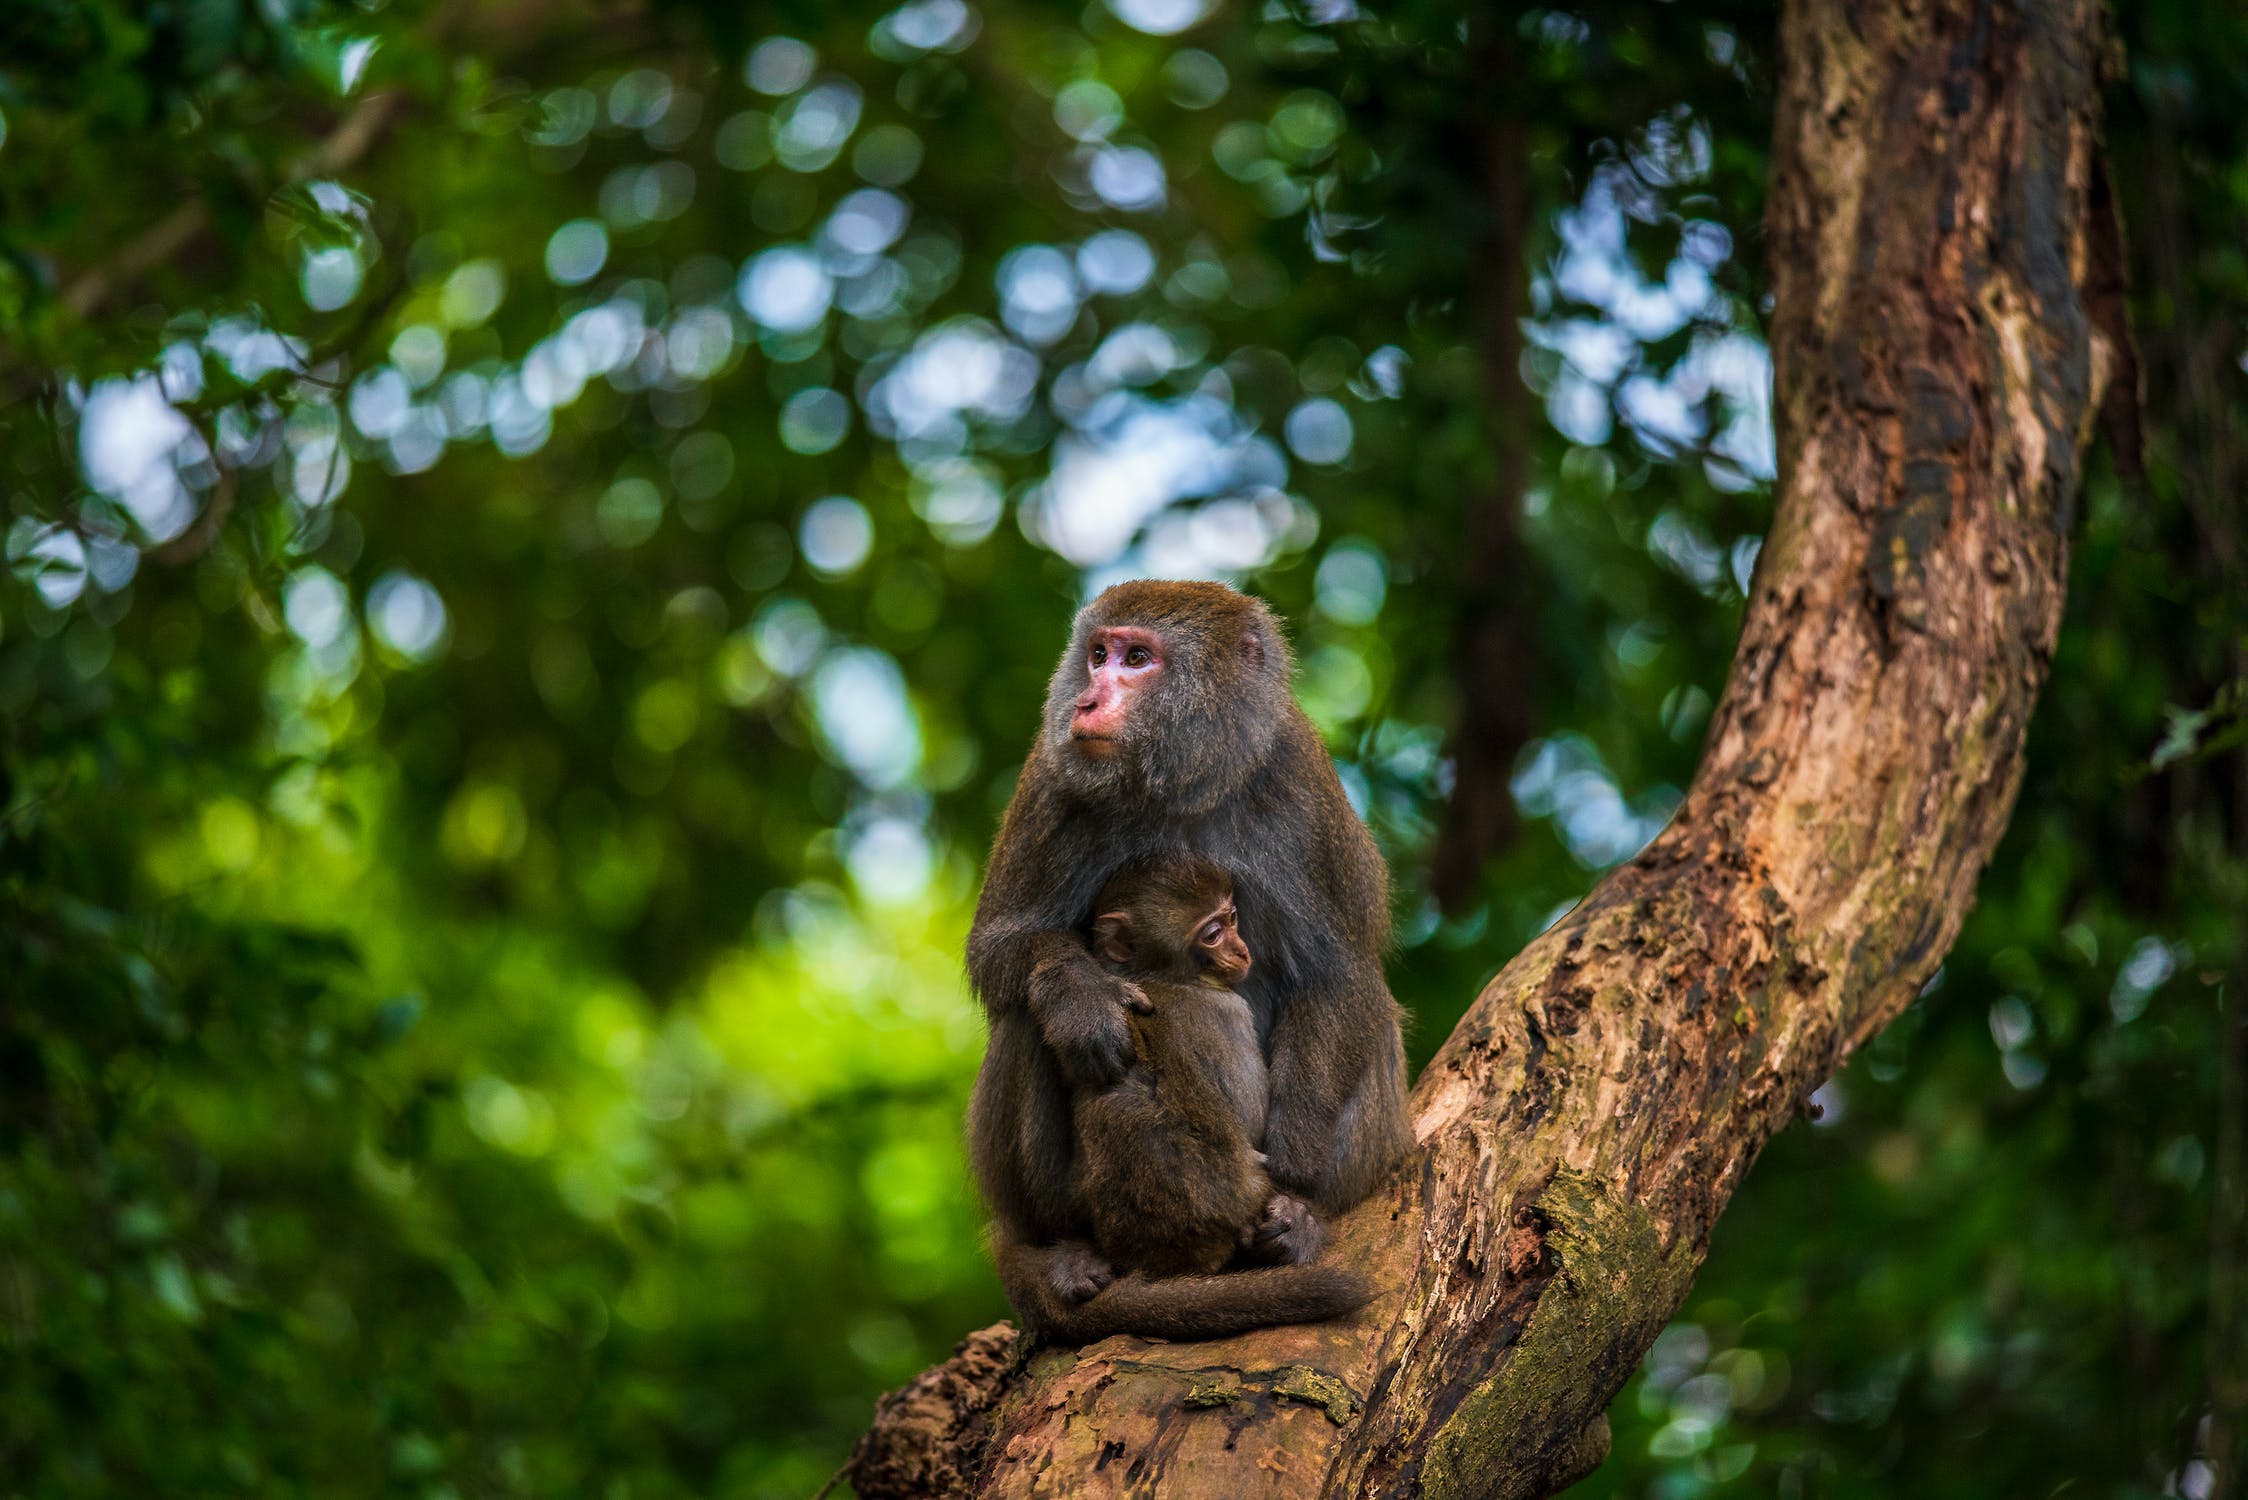 Μαϊμούδες Ινδία: Συνελήφθησαν για τον θάνατο κουταβιών